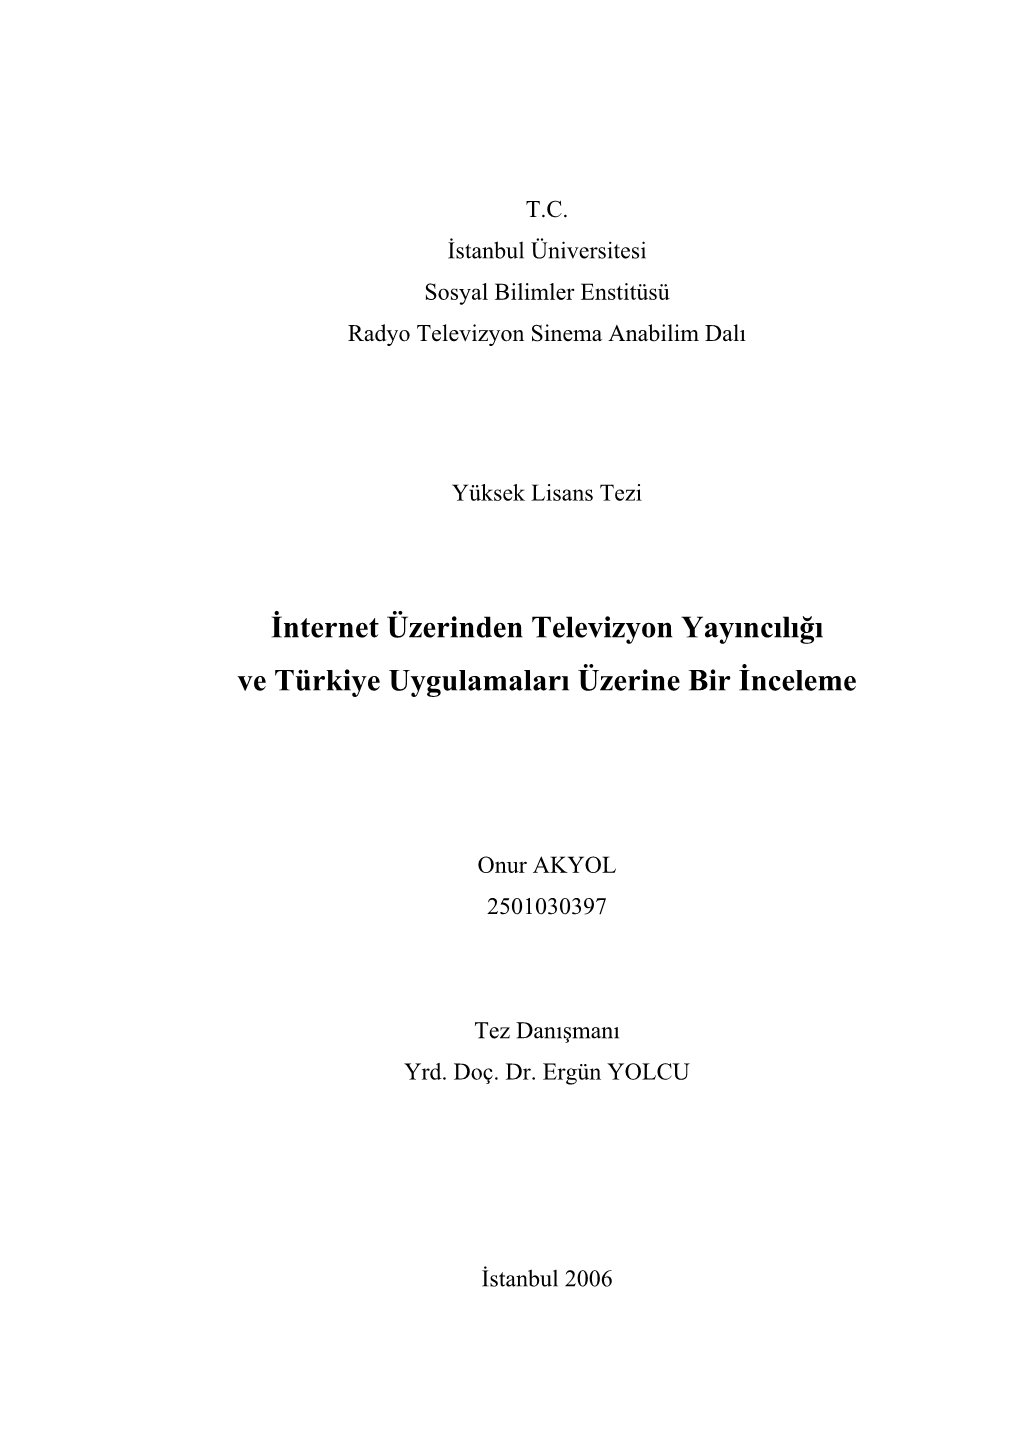 İnternet Üzerinden Televizyon Yayıncılığı Ve Türkiye Uygulamaları Üzerine Bir İnceleme